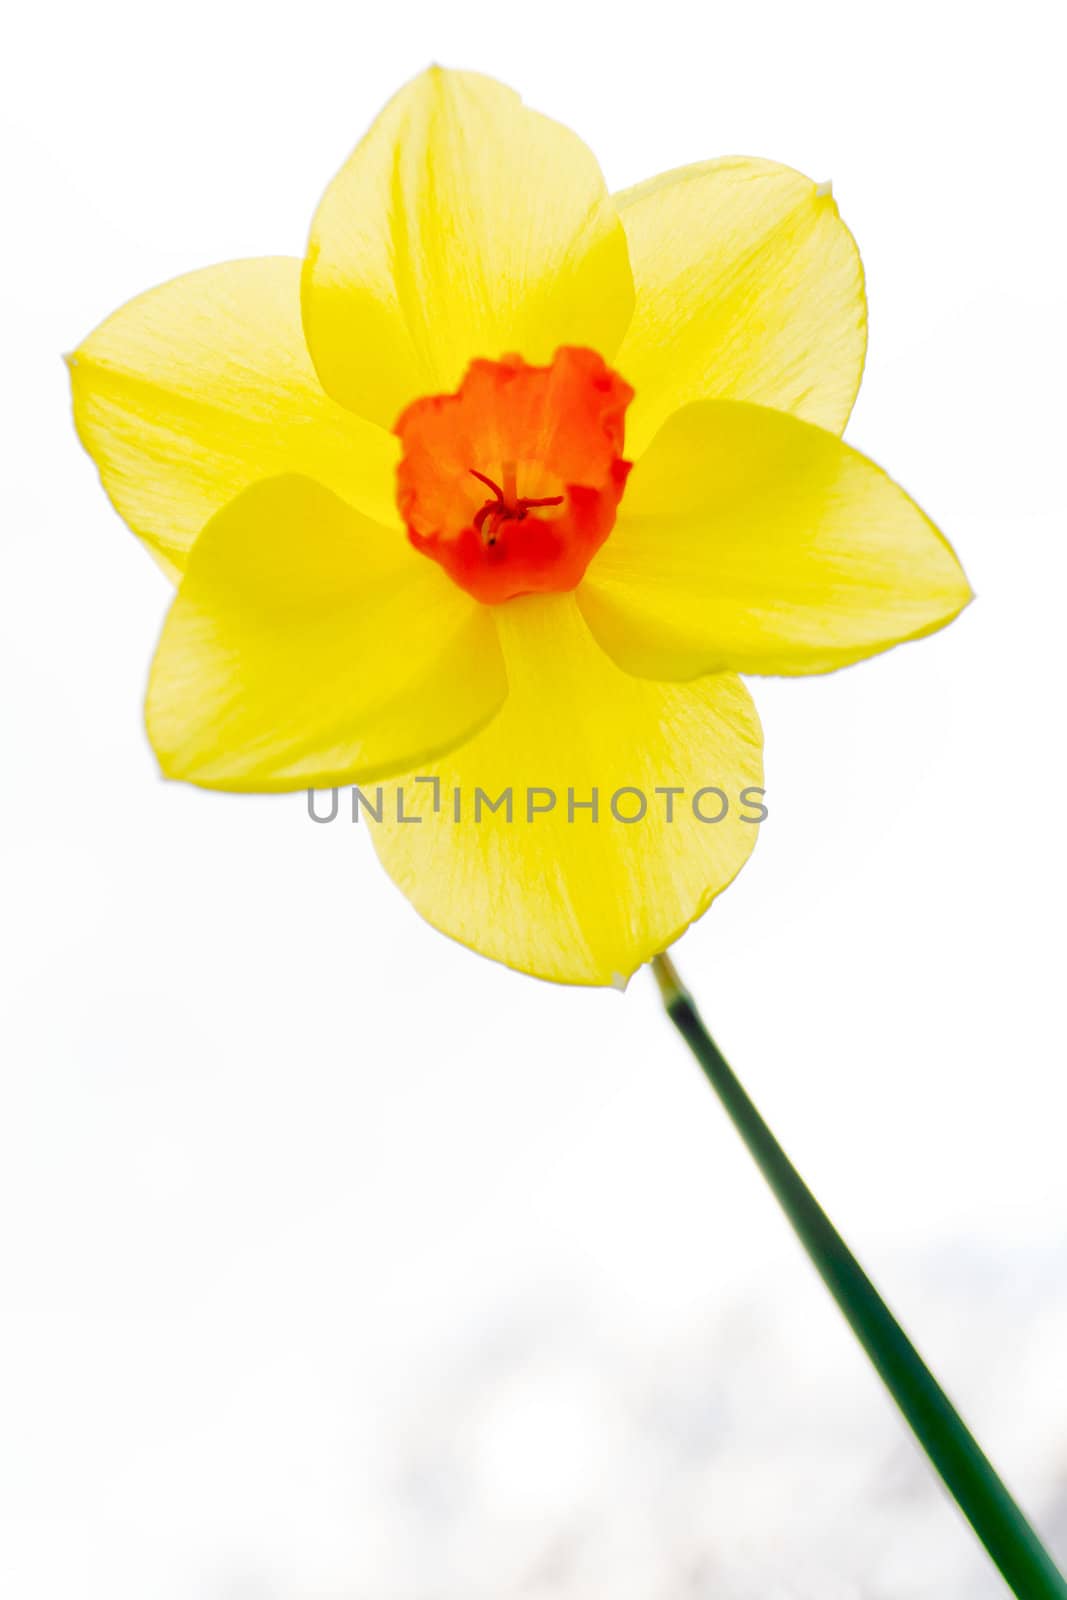 Bright yellow and orange high key daffodil flower